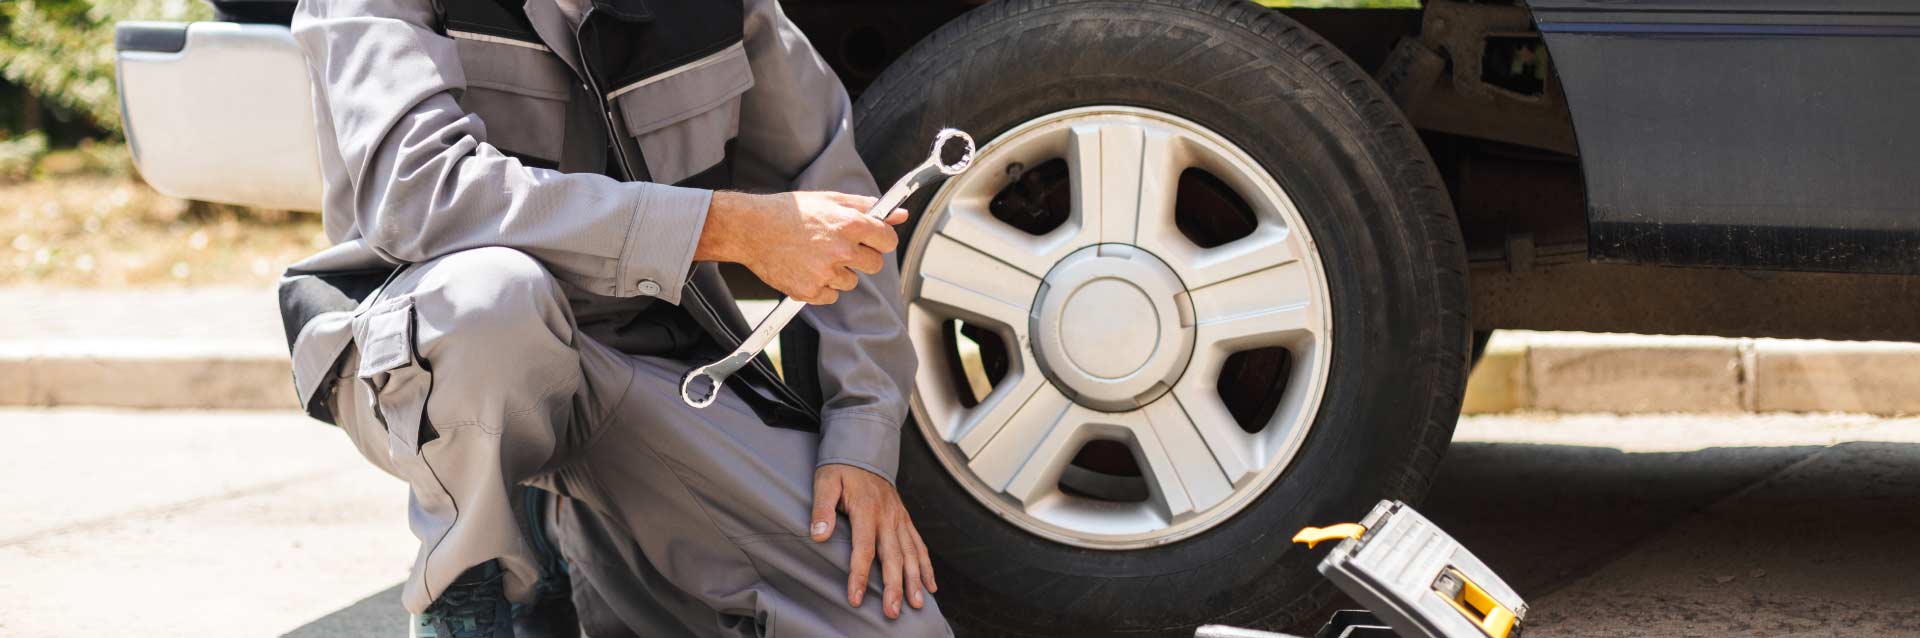 Como trocar um pneu furado no meu carro? Confira o passo a passo